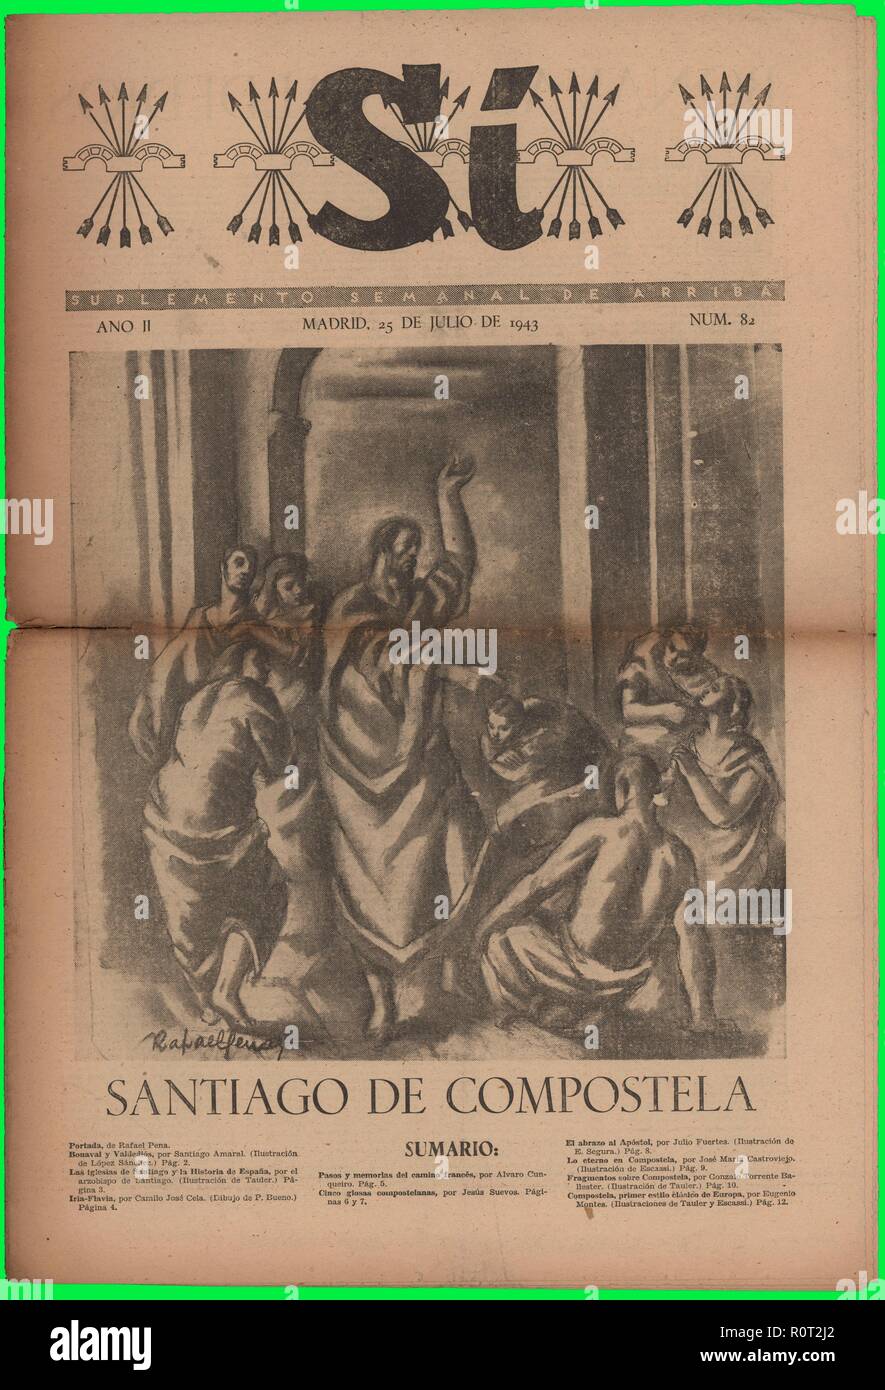 Portada de la revista Sí, suplemento semanal de Arriba, editado en Madrid, julio de 1943. Stock Photo